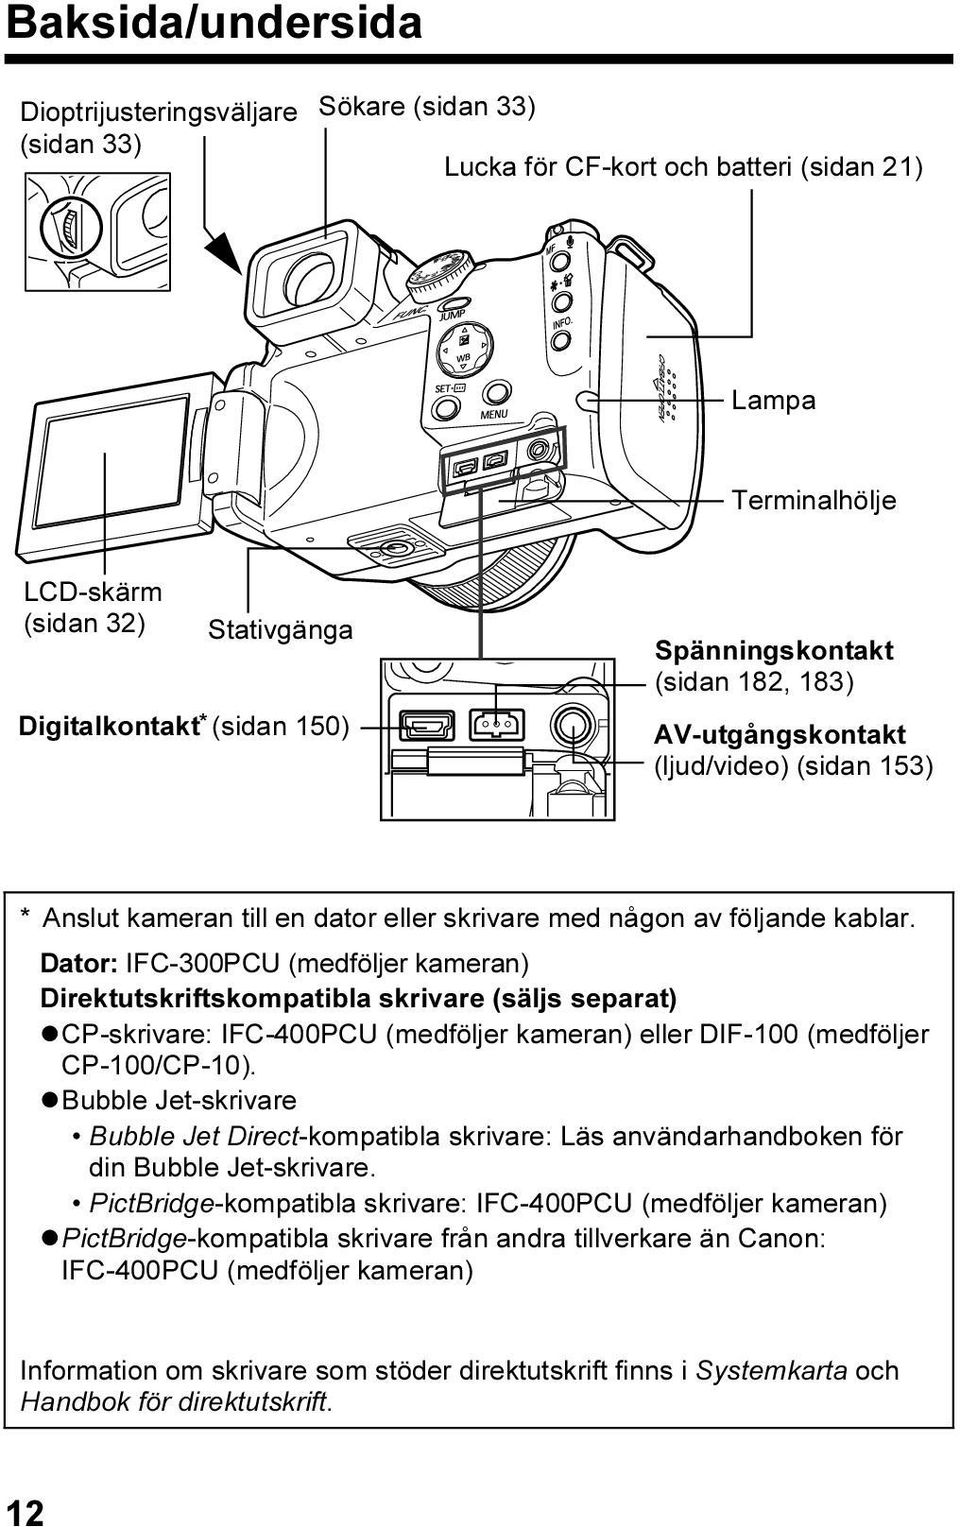 Dator: IFC-300PCU (medföljer kameran) Direktutskriftskompatibla skrivare (säljs separat) CP-skrivare: IFC-400PCU (medföljer kameran) eller DIF-100 (medföljer CP-100/CP-10).